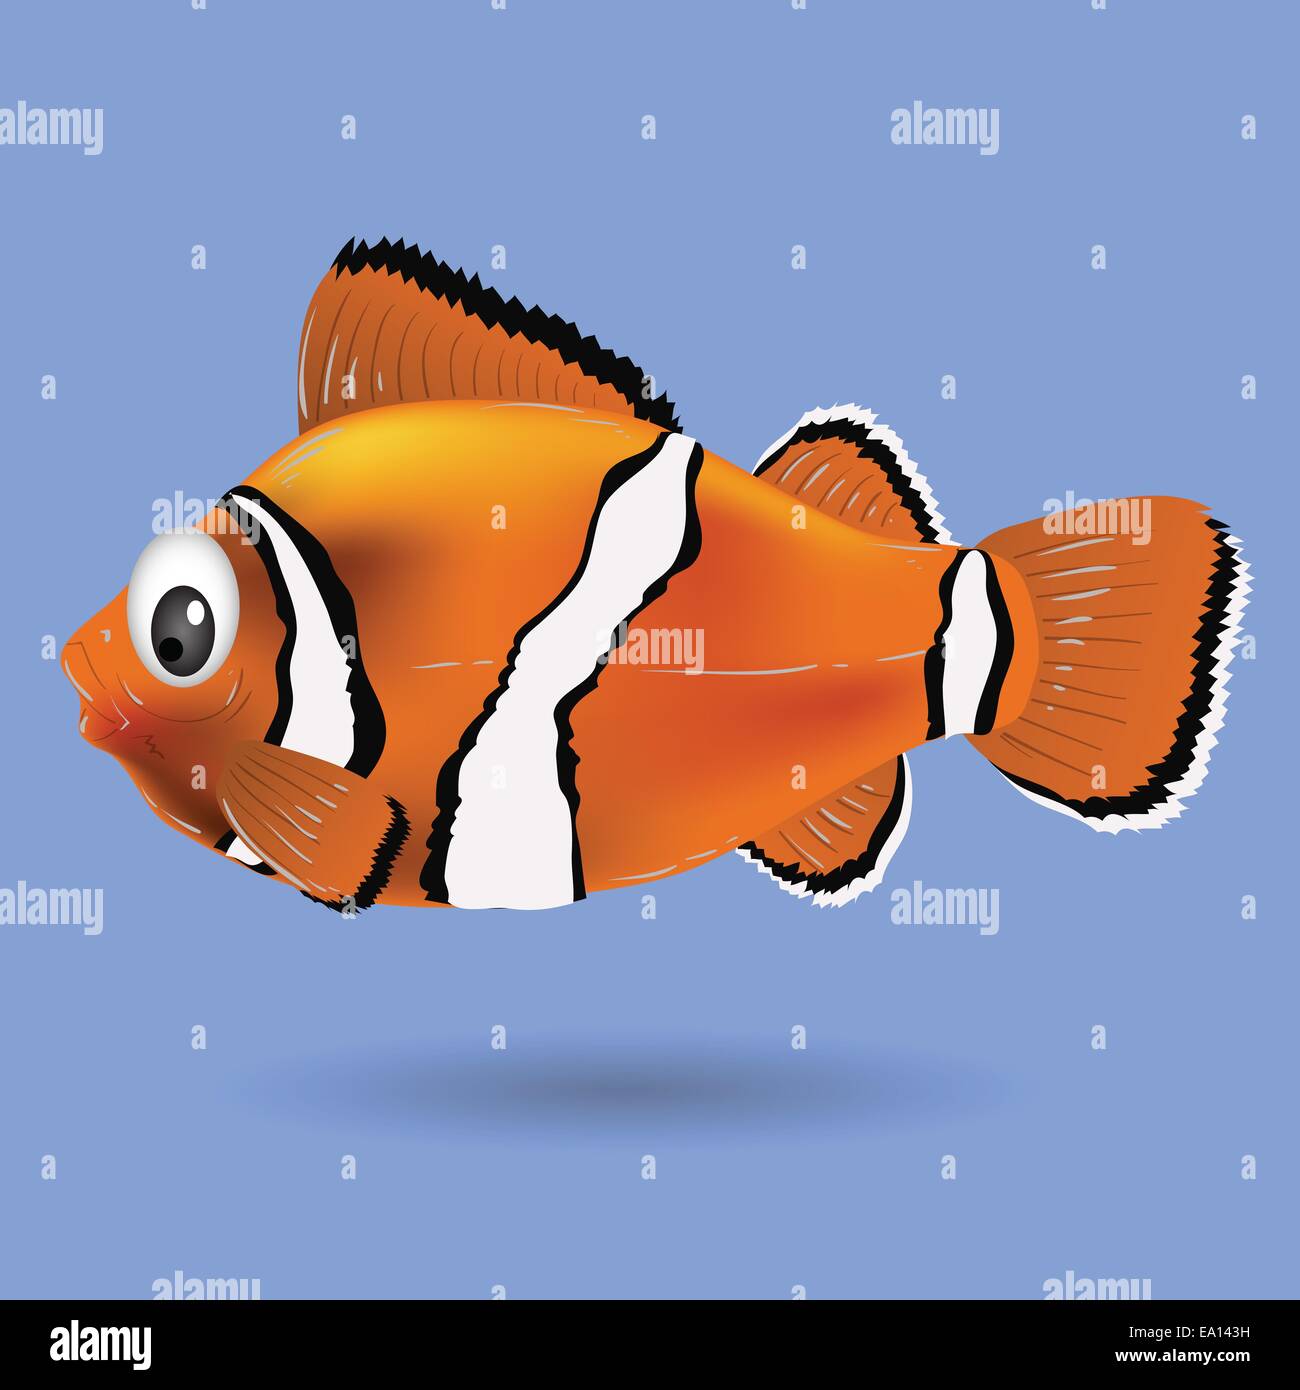 clownfish Stock Photo